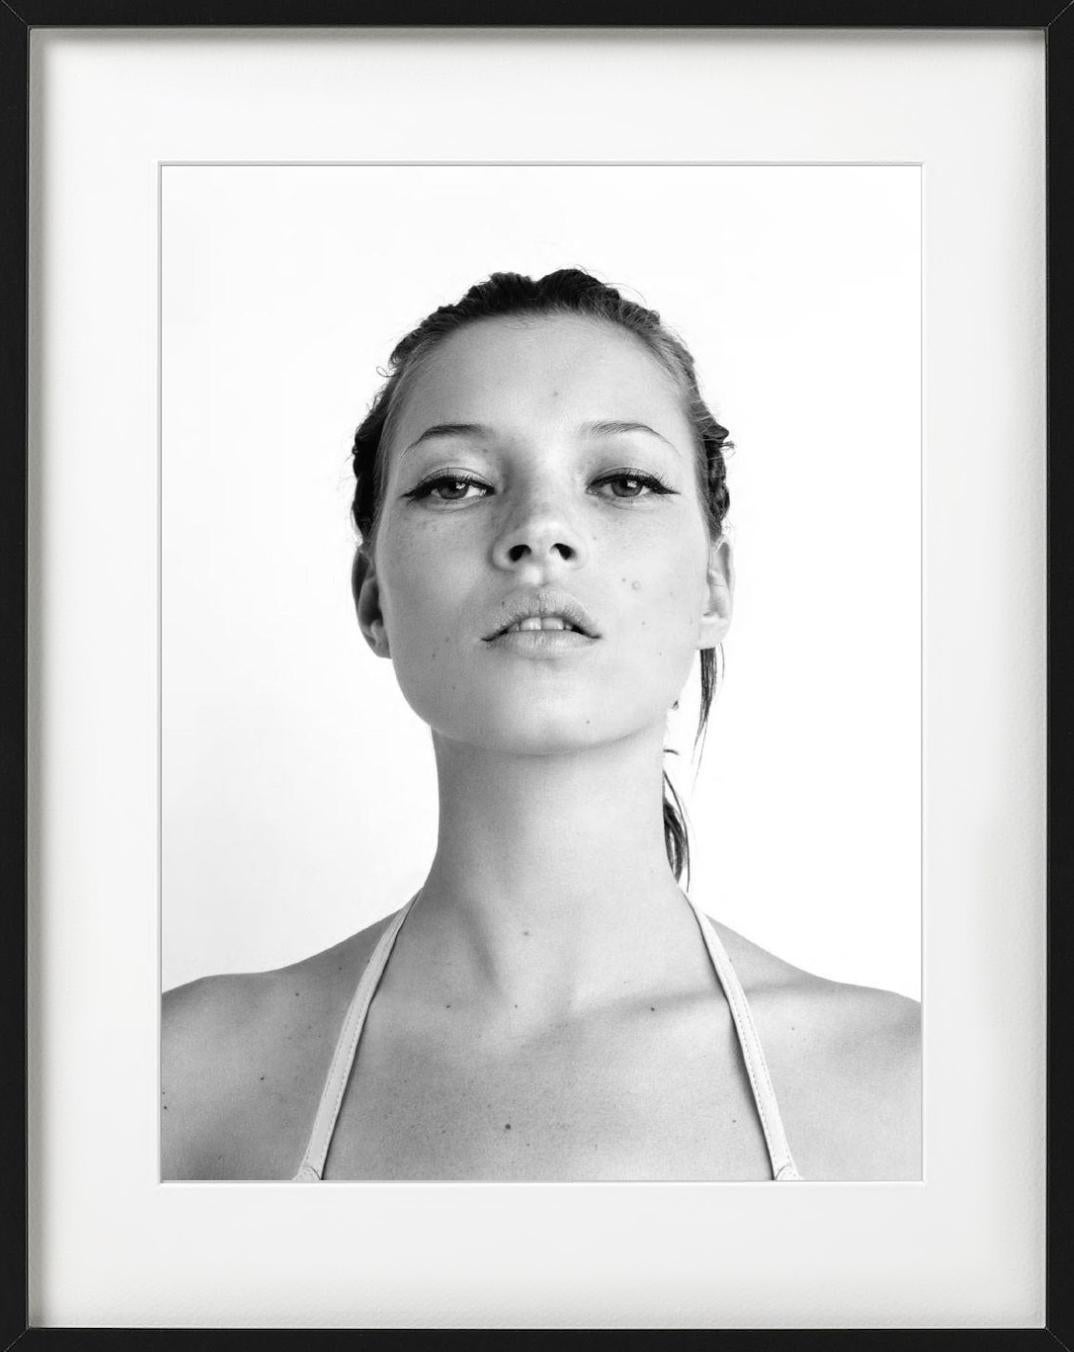 Kate's Look – Porträt der Supermodel Kate Moss, Kunstfotografie, 1998 (Zeitgenössisch), Photograph, von Rankin